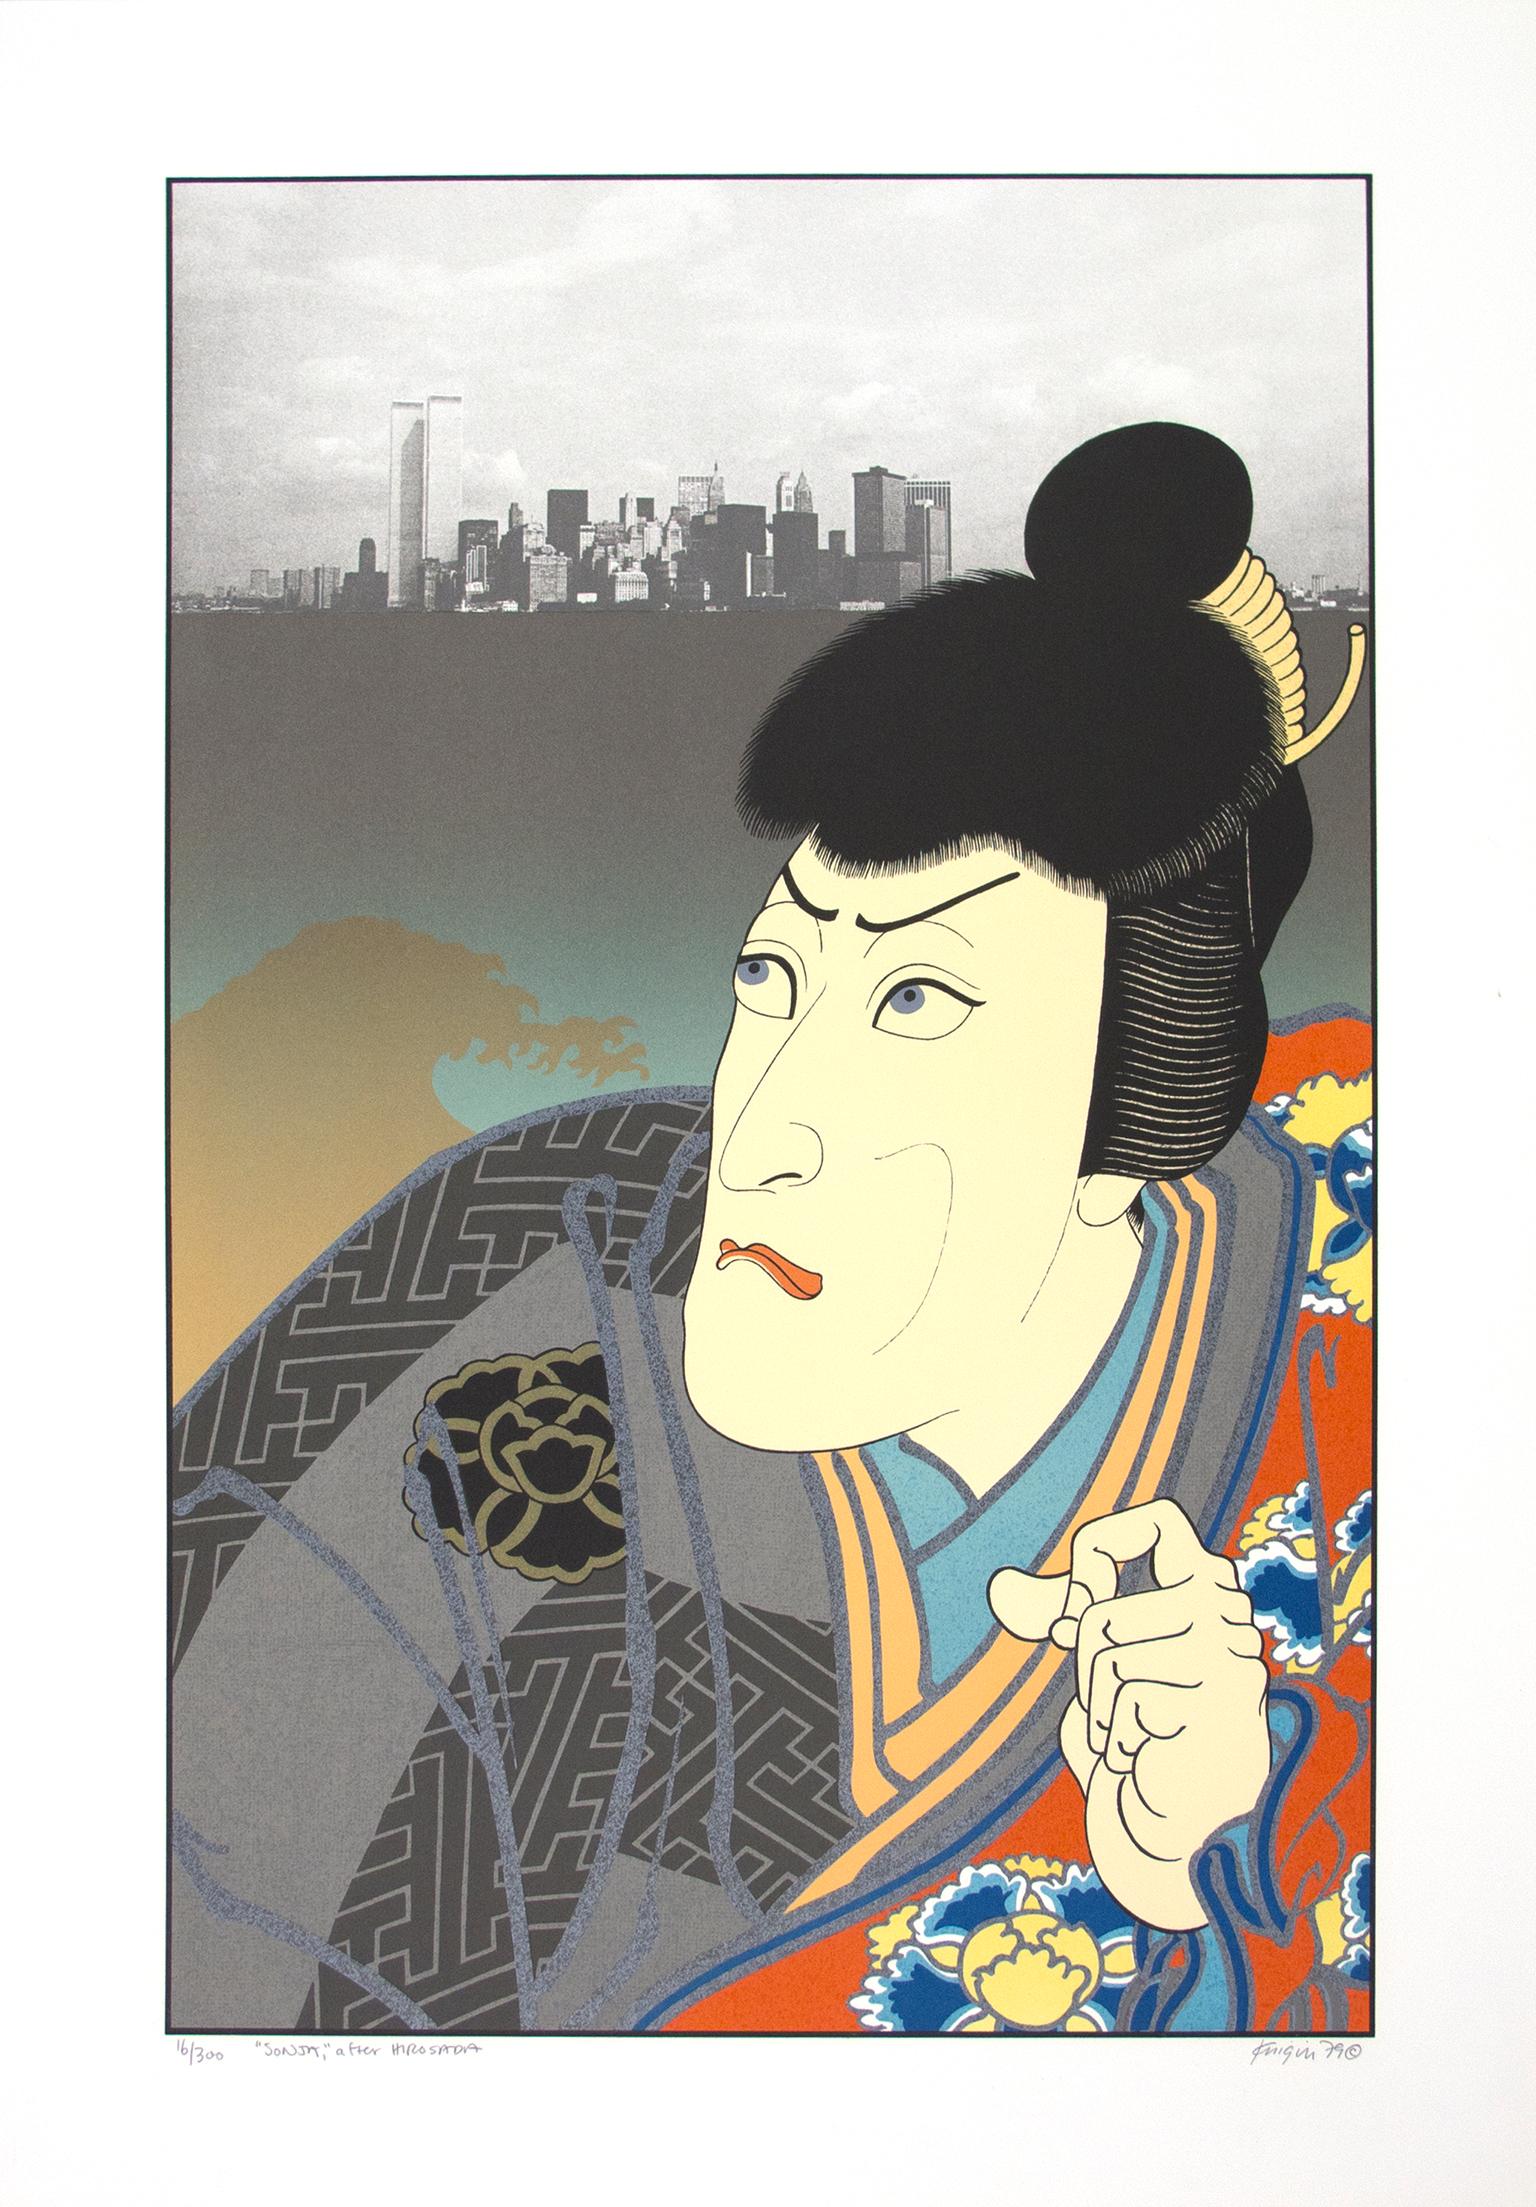 Portrait Print Michael Knigin - « Sonja, After Hirosada », lithographie originale, portrait de personnage pop, paysage de ville japonais